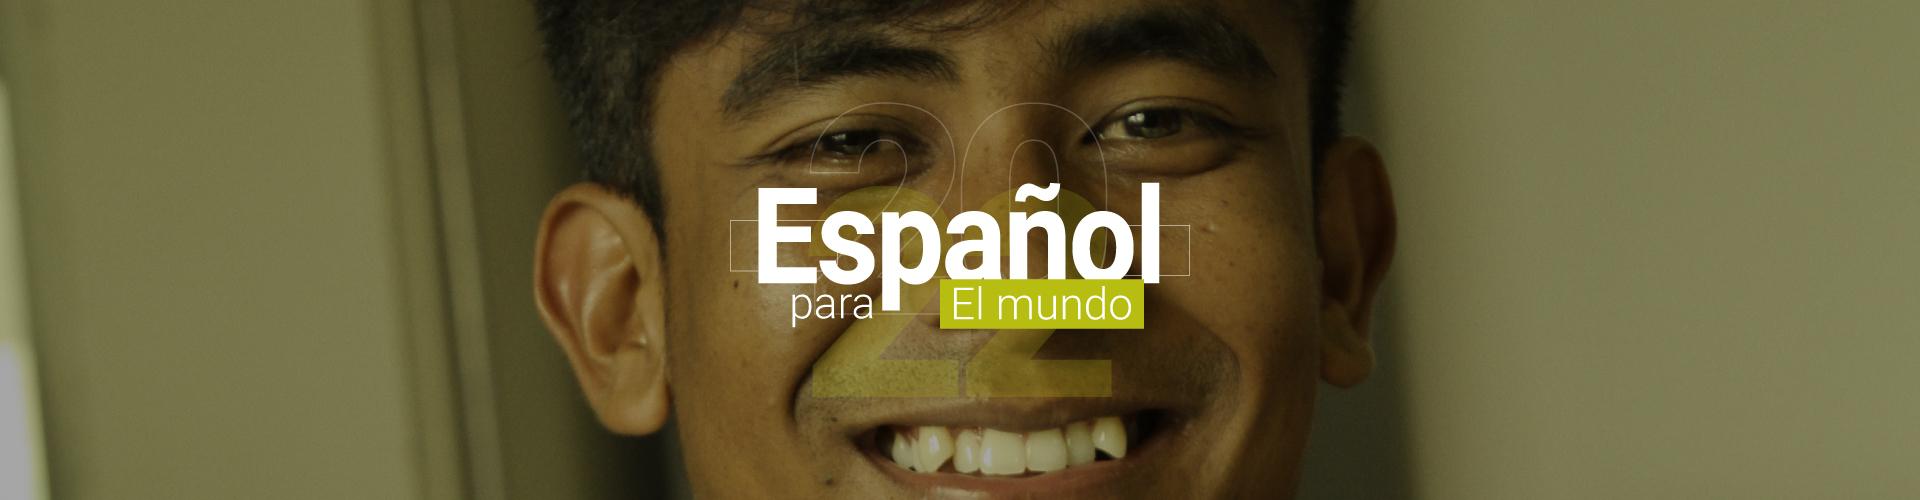 Español para el mundo banner